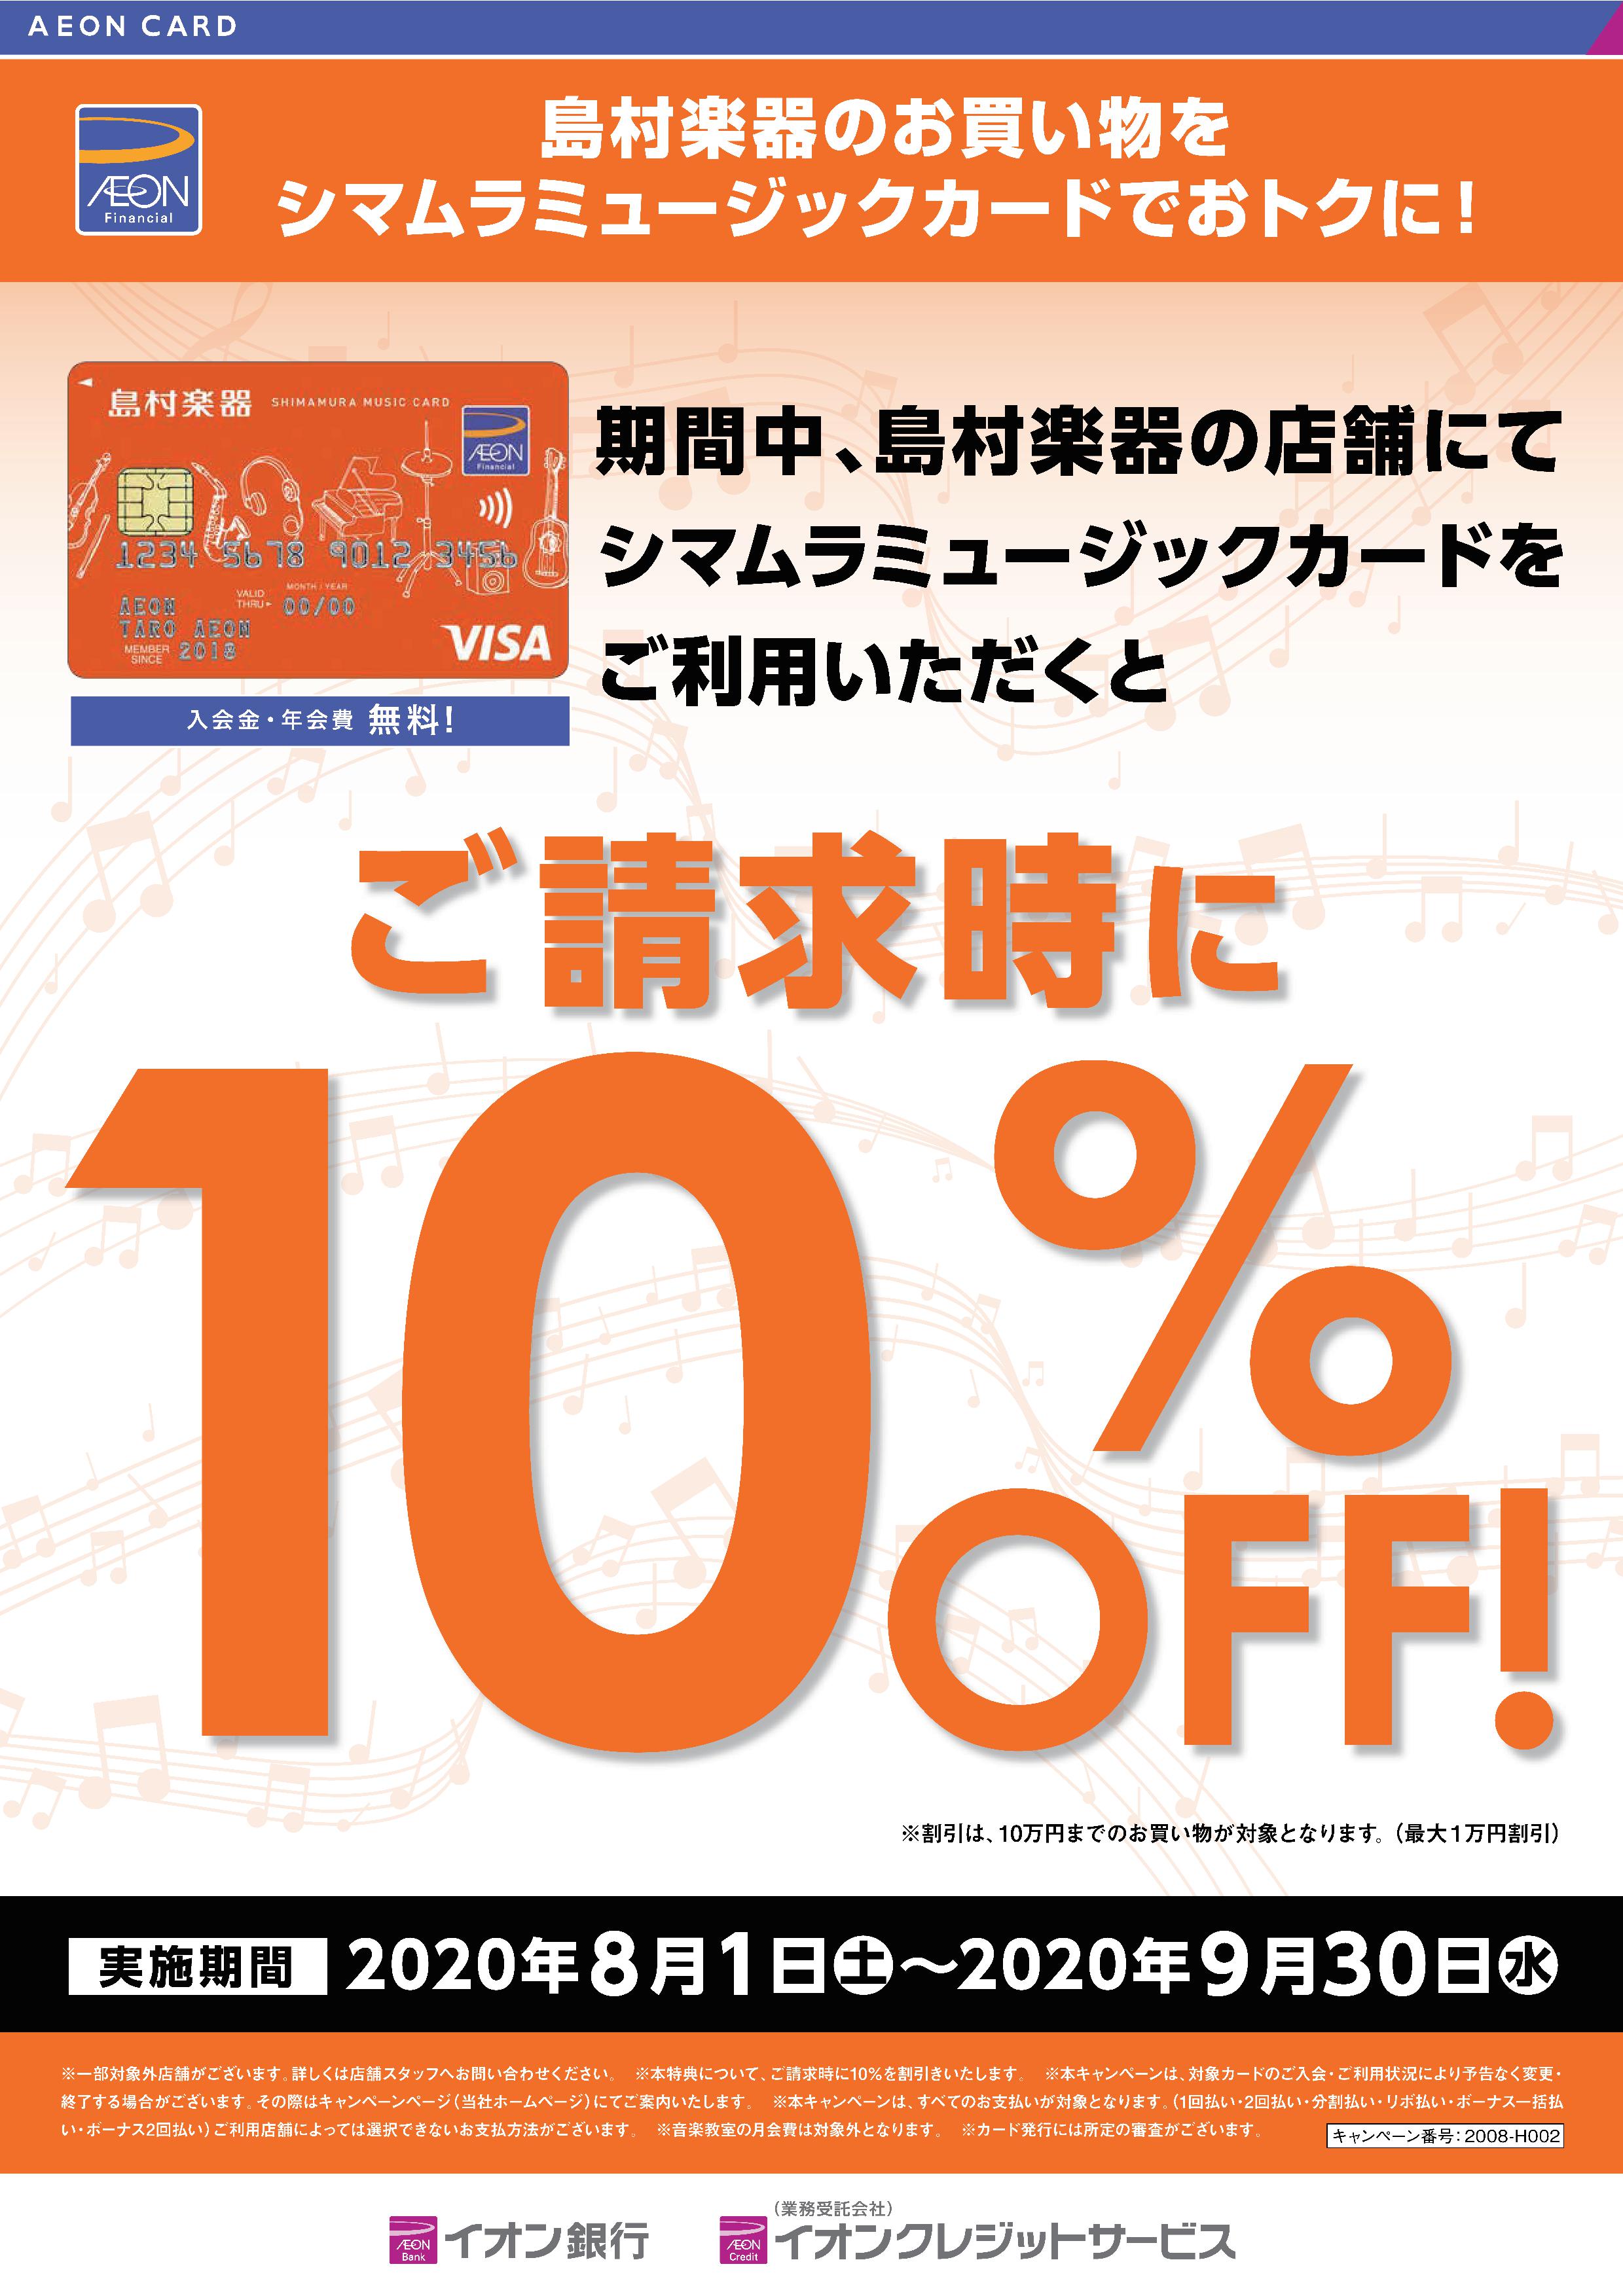 *シマムラミュージックカードでのお支払いで10%OFF! 欲しかったあの楽器がお得に買えるチャンスです!]]ぜひこの機会にシマムラミュージックカードにご入会下さい。→[https://www.aeon.co.jp/creditcard/lineup/shimamuramusic.html:title […]